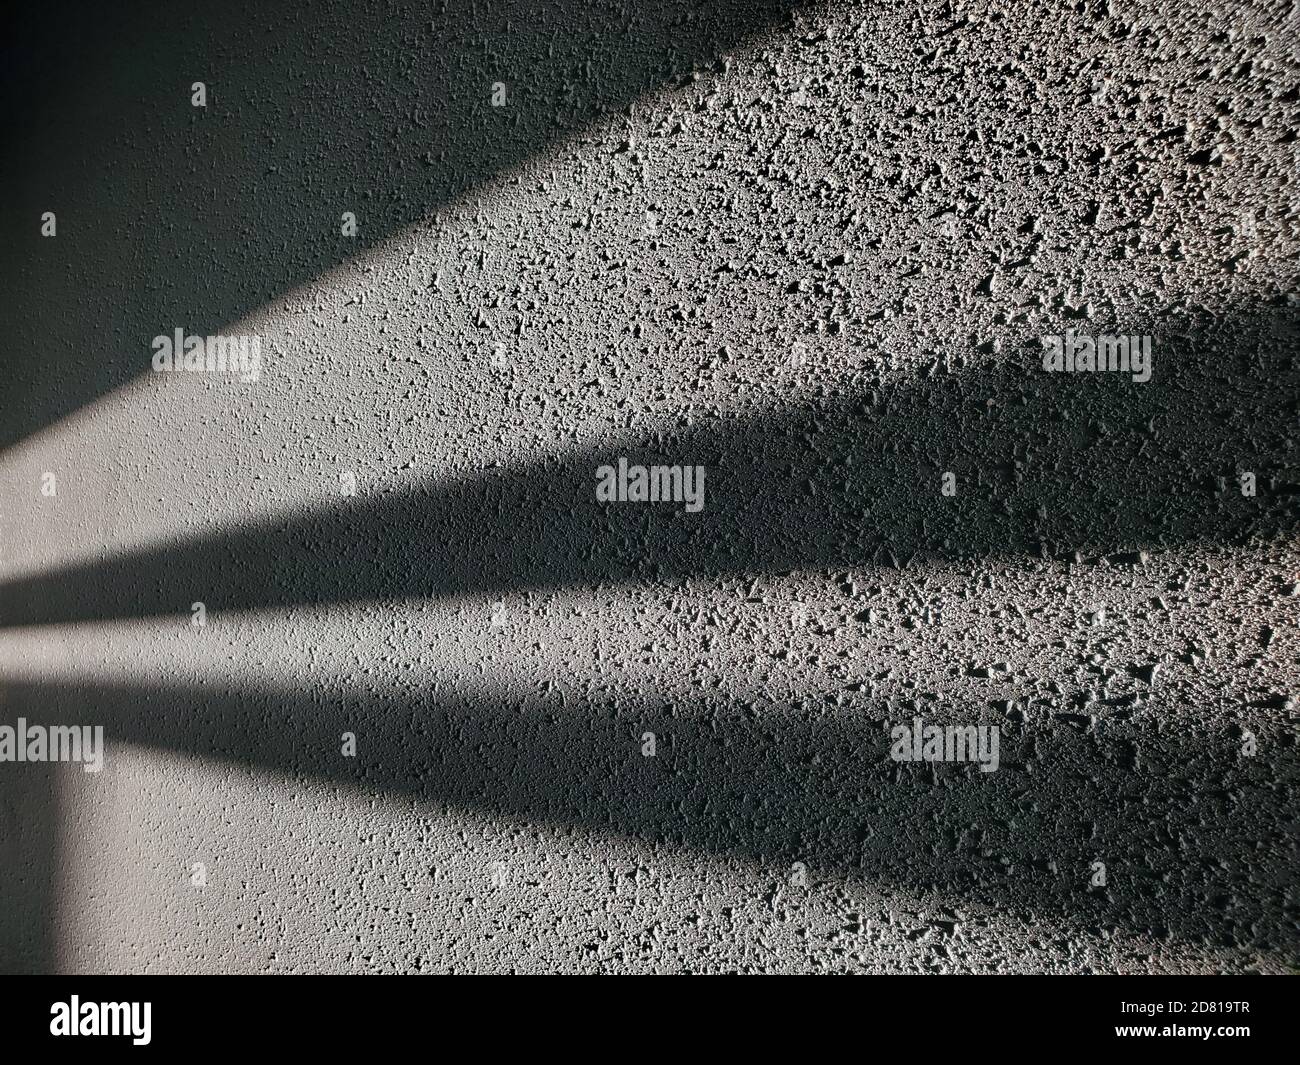 Les ombres géométriques abstraites ressemblent à des rayons de lumière dans l'obscurité. Mur en plâtre rugueux avec surface colorée grise et rayures de lumière et d'ombre Banque D'Images